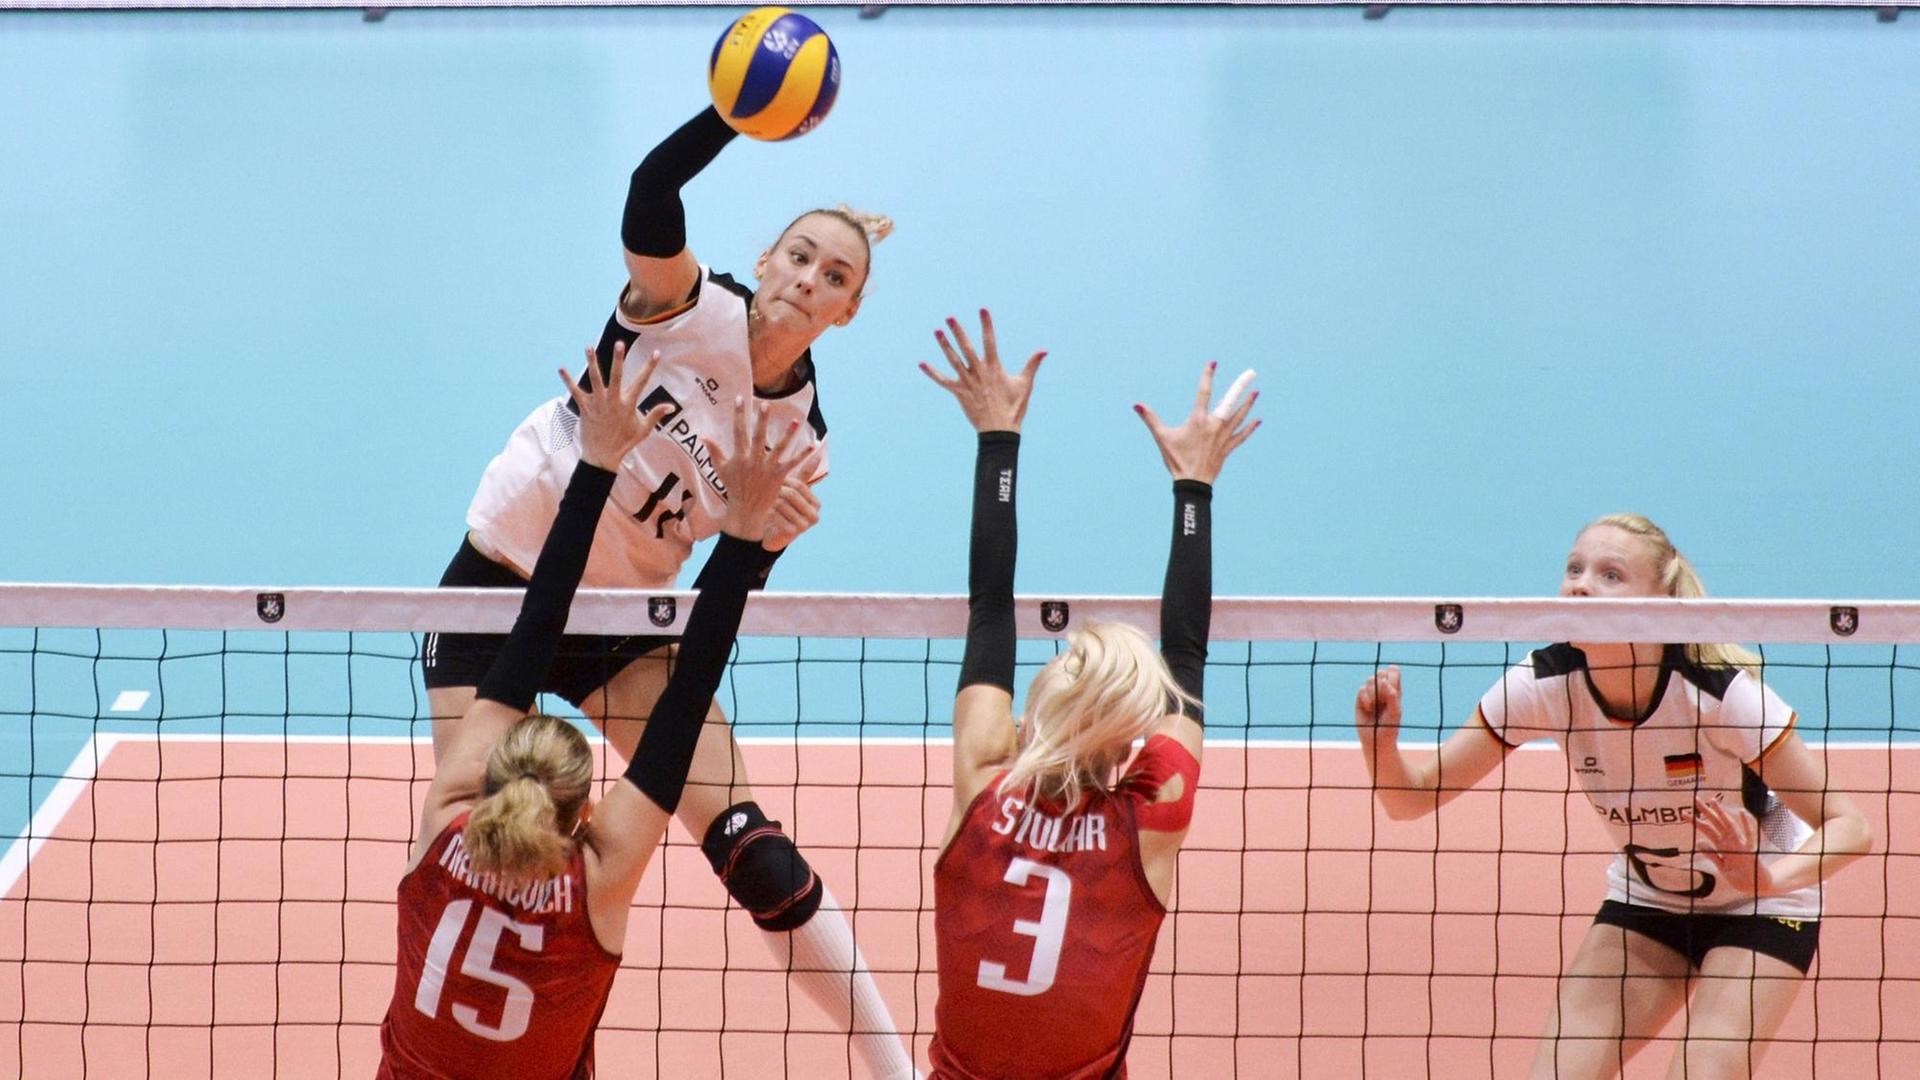 Volleyball-Nationalspielerin Louisa Lippmann im Angriff - bei den Europameisterschaften im Spiel gegen Weissrussland